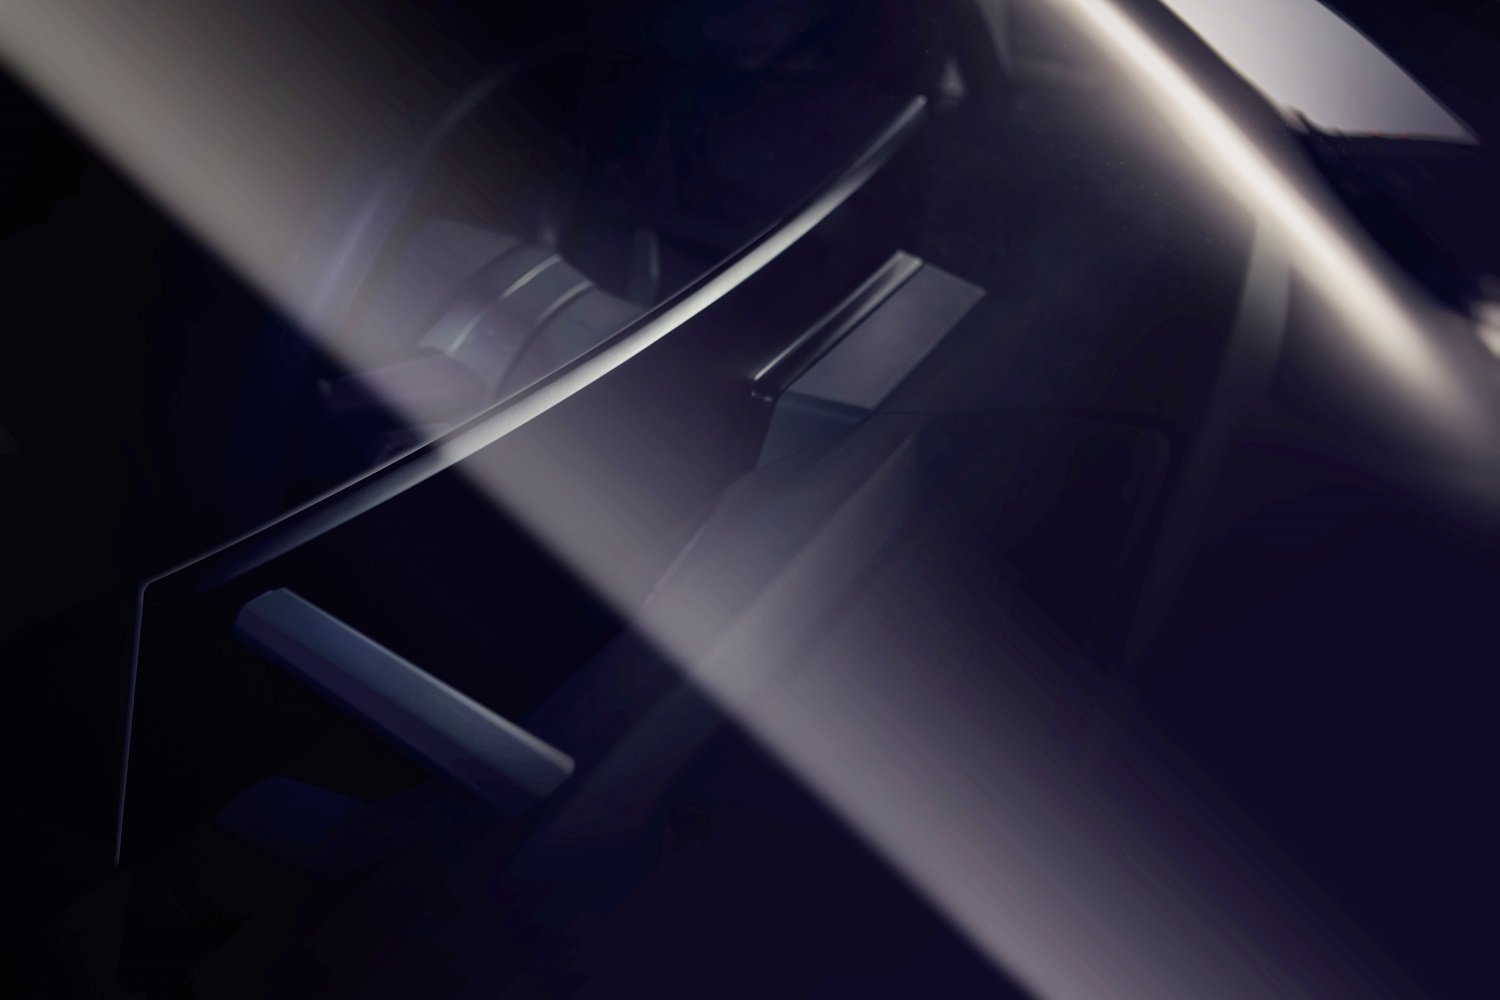 Nový prohnutý displej použitý v BMW iNEXT v sobě spojí funkce informačního a kontrolního displeje a zásluhou svého tvaru bude optimálně natočený k řidiči